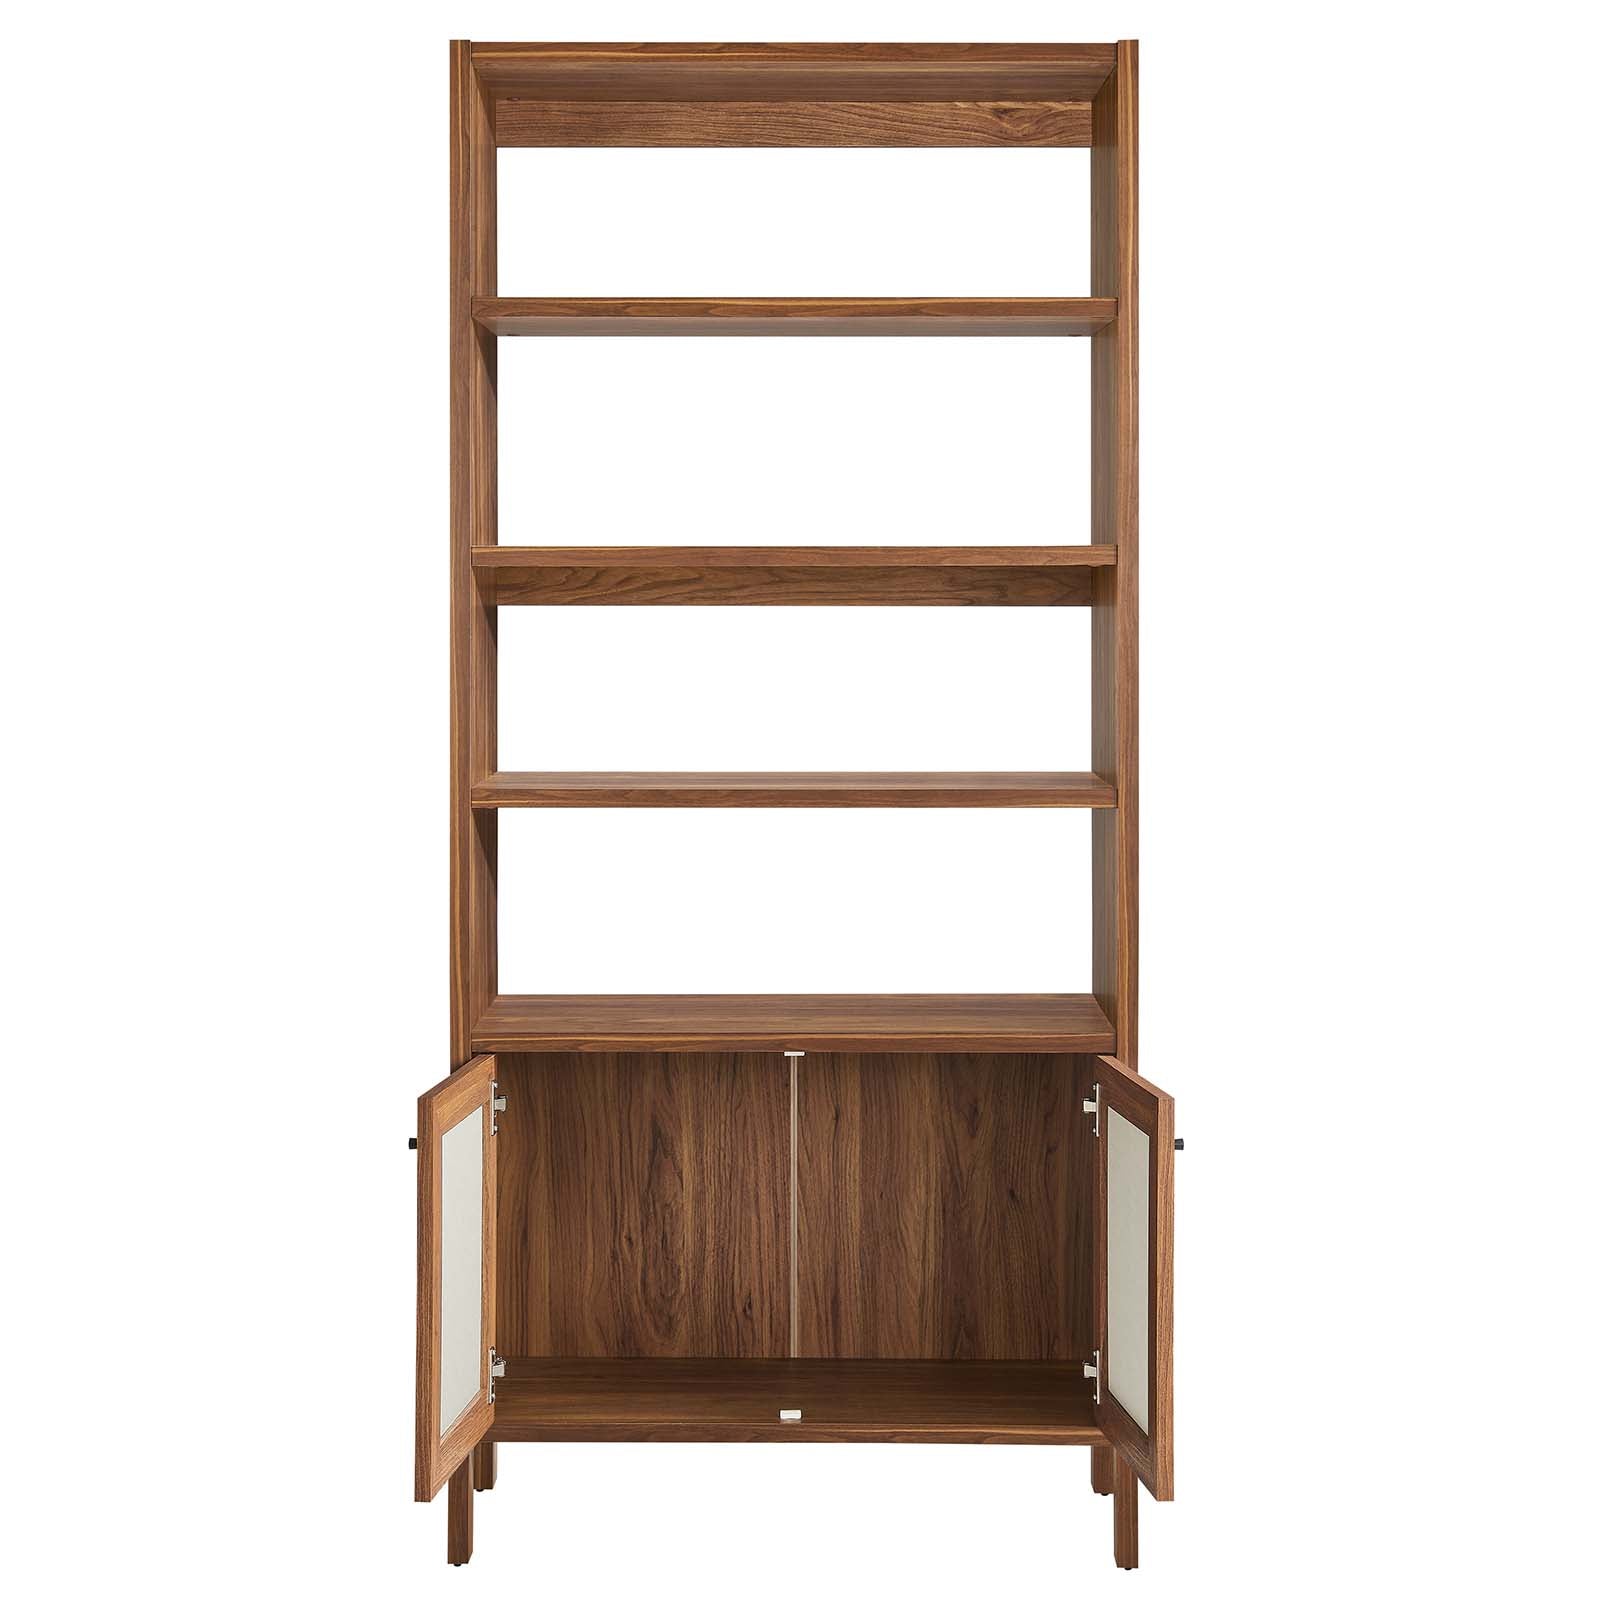 Capri 4-Shelf Wood Grain Bookcase - East Shore Modern Home Furnishings